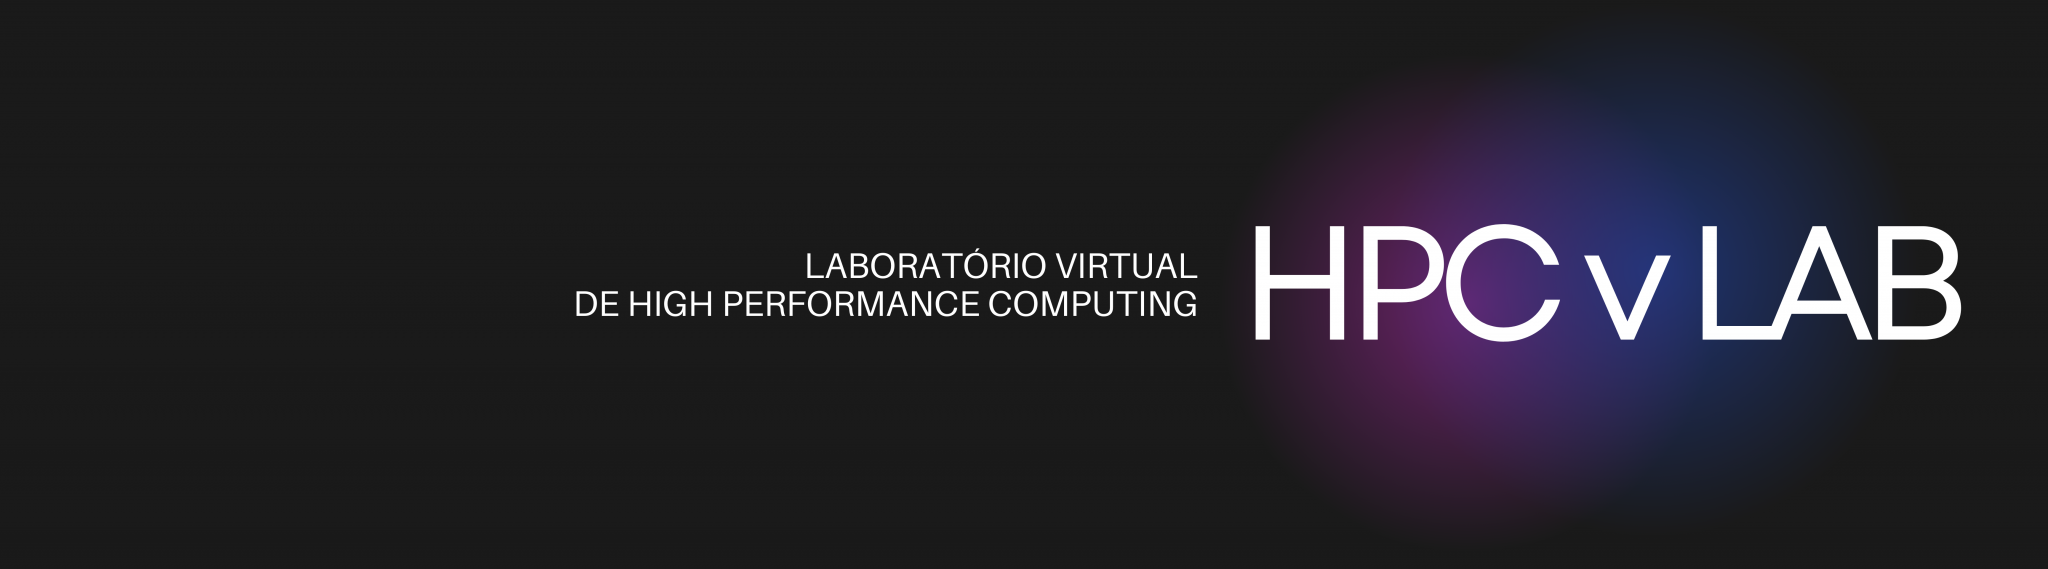 Imagem alusiva ao Laboratório Virtual de High Performance Computing - HPCvLAB